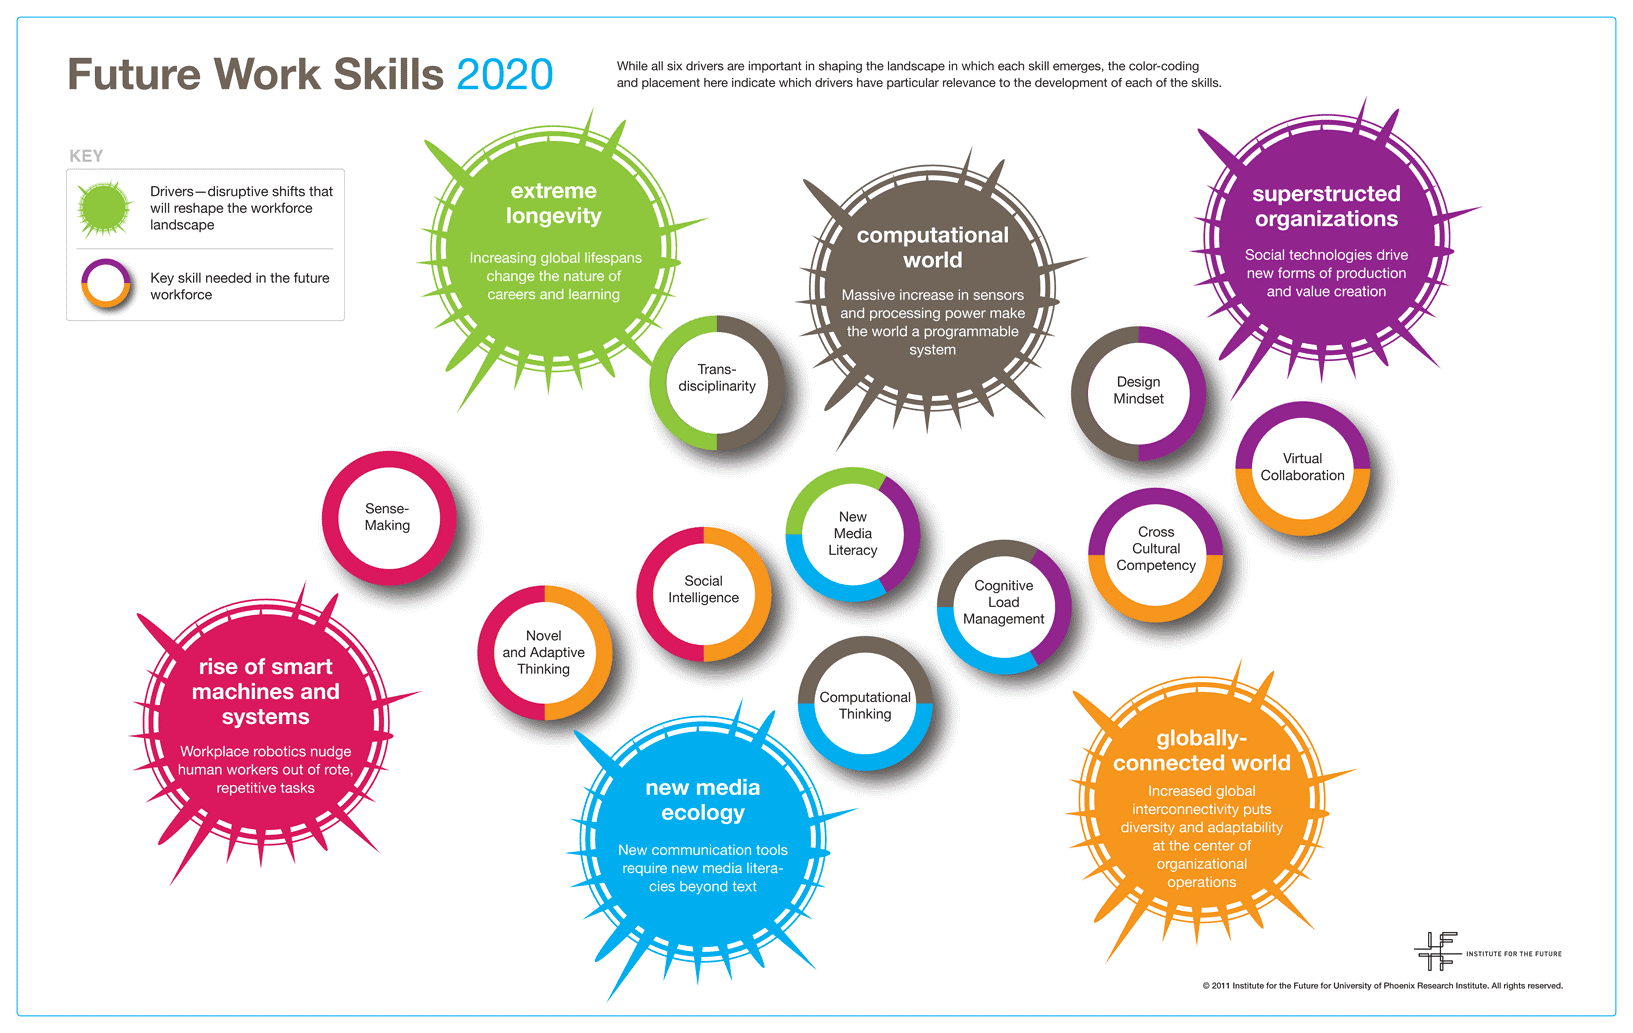 Grafik "Future Work Skills 2020" vom "Institute for the Future".